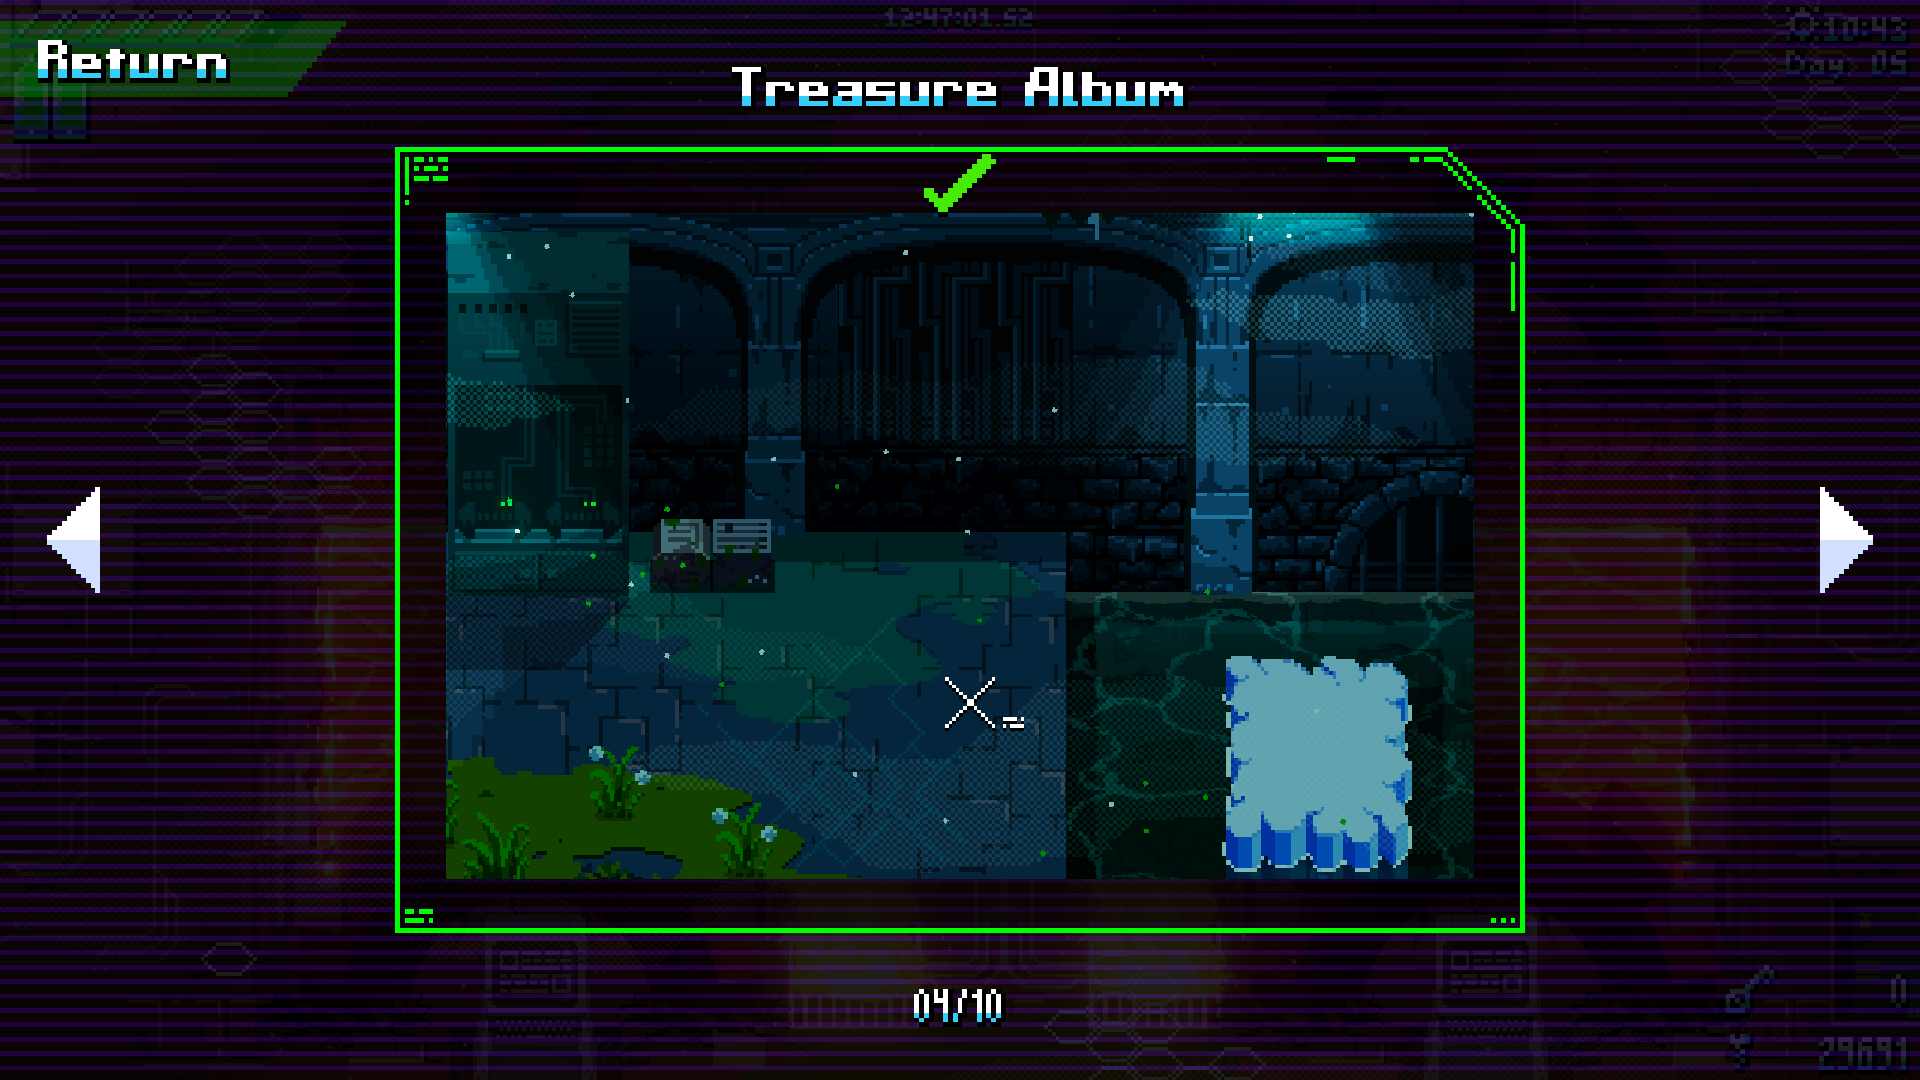 Treasure album image 9